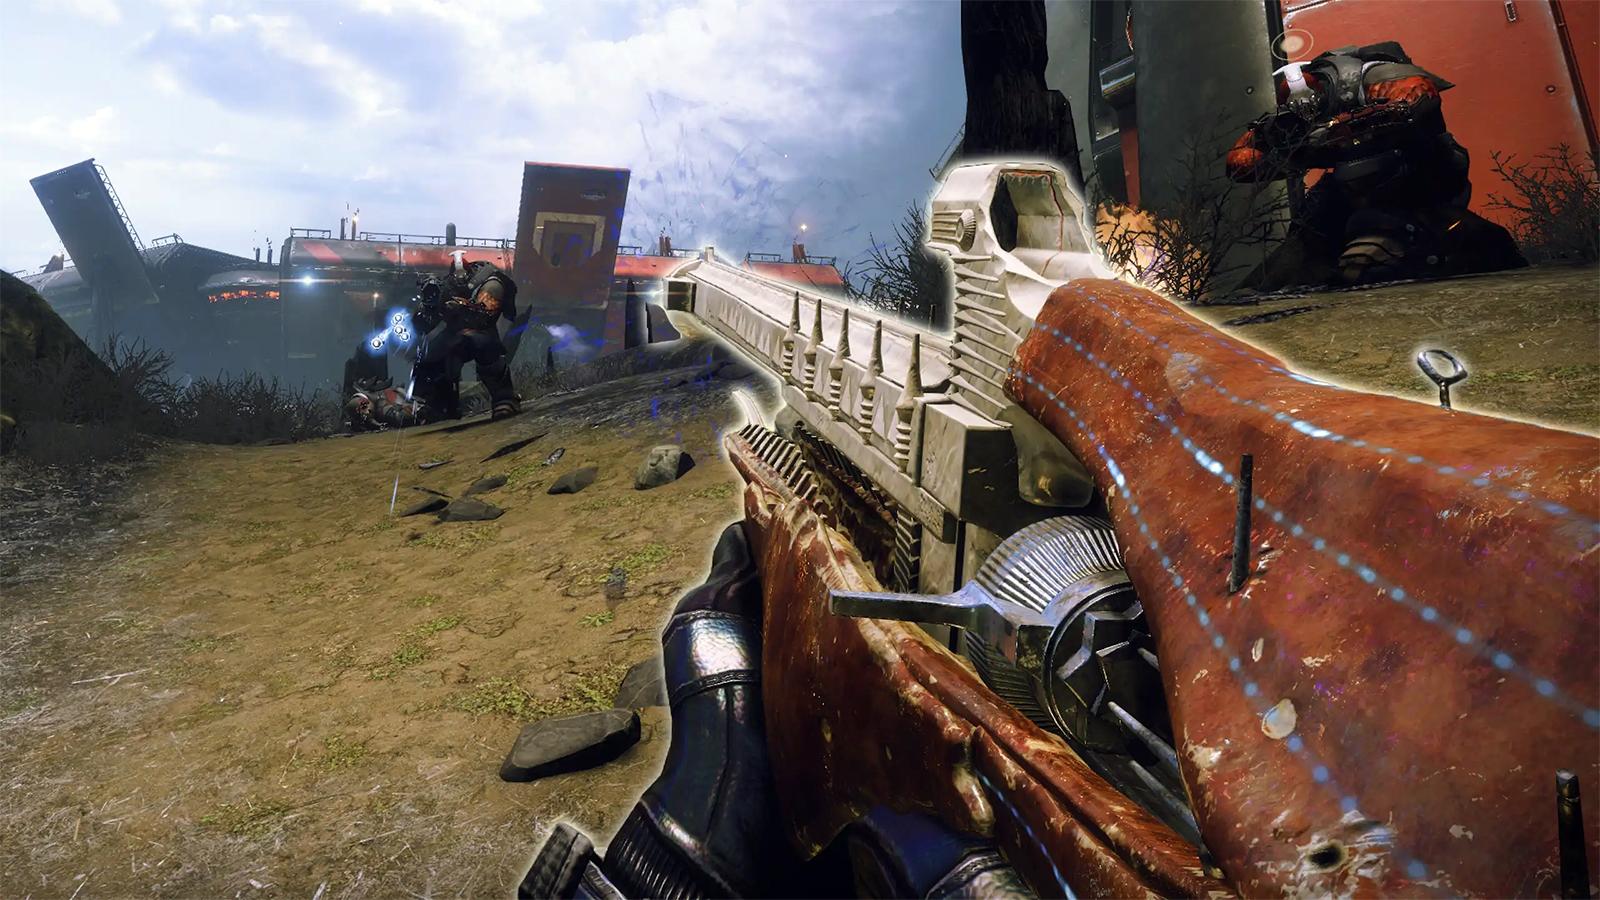 Fusil d’éclaireur Outil de Folie dans Destiny 2 en jeu